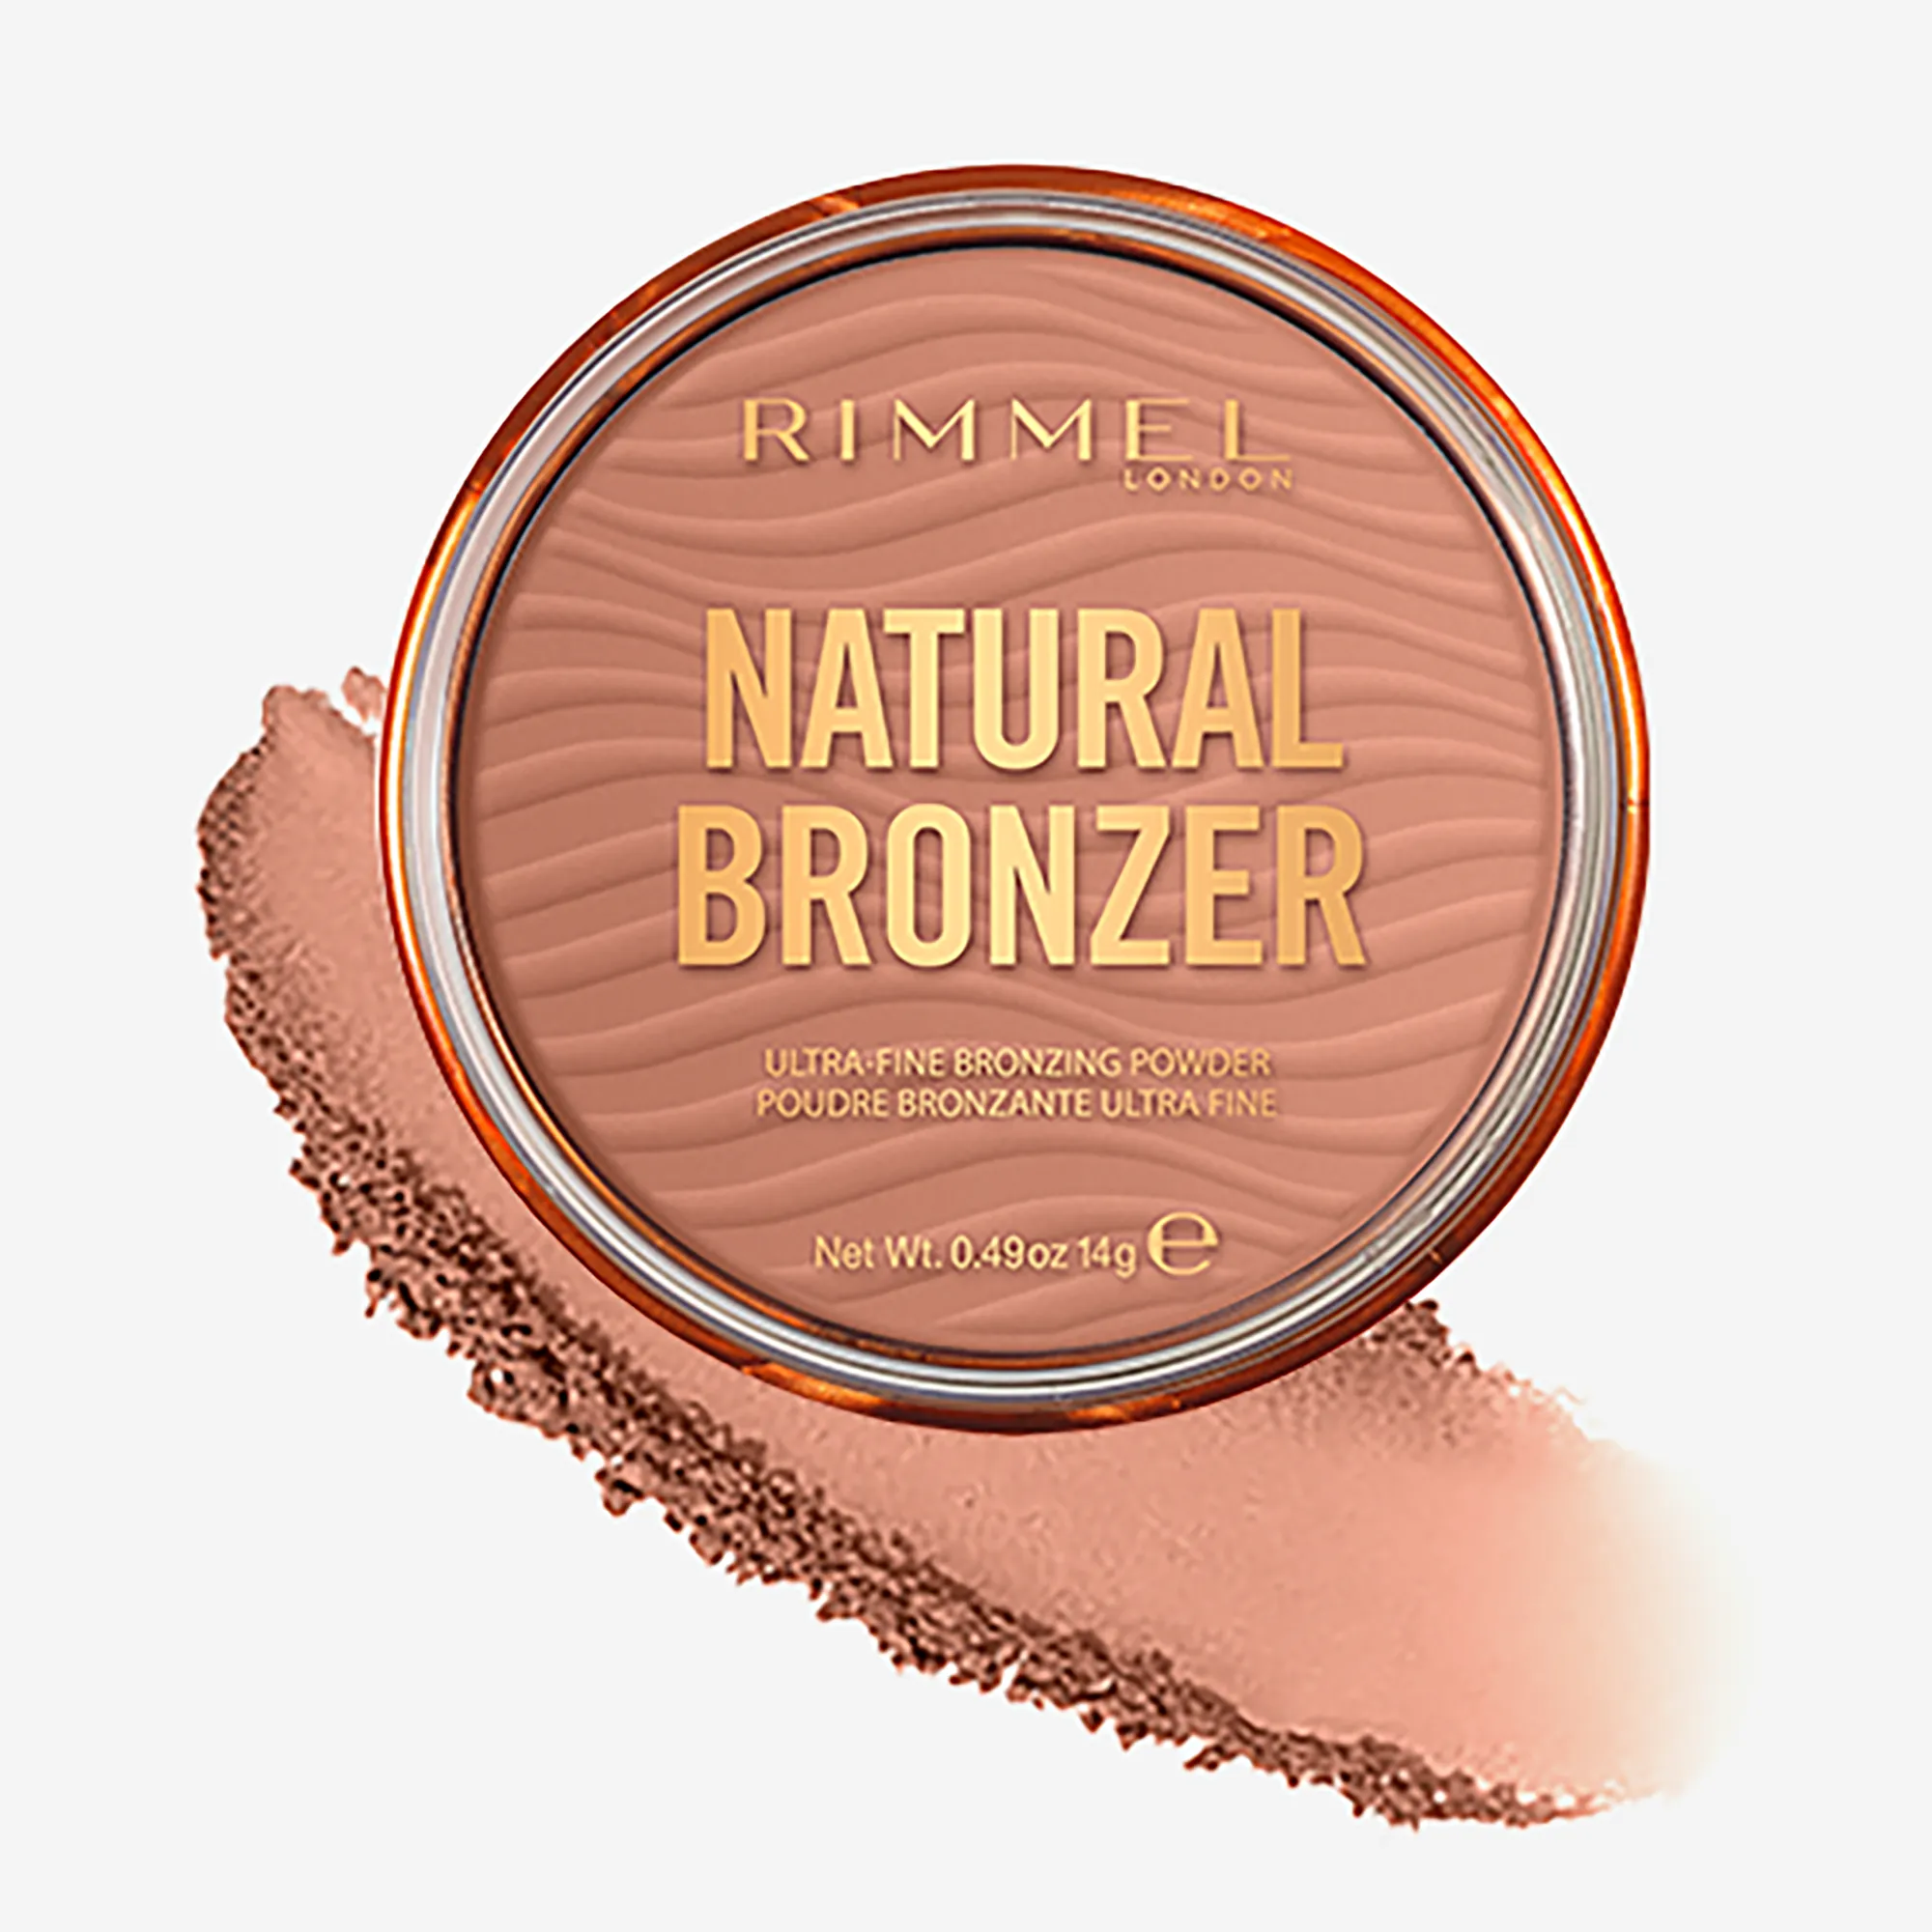 Rimmel Natural Bronzer 001 Sunlight, 14 g